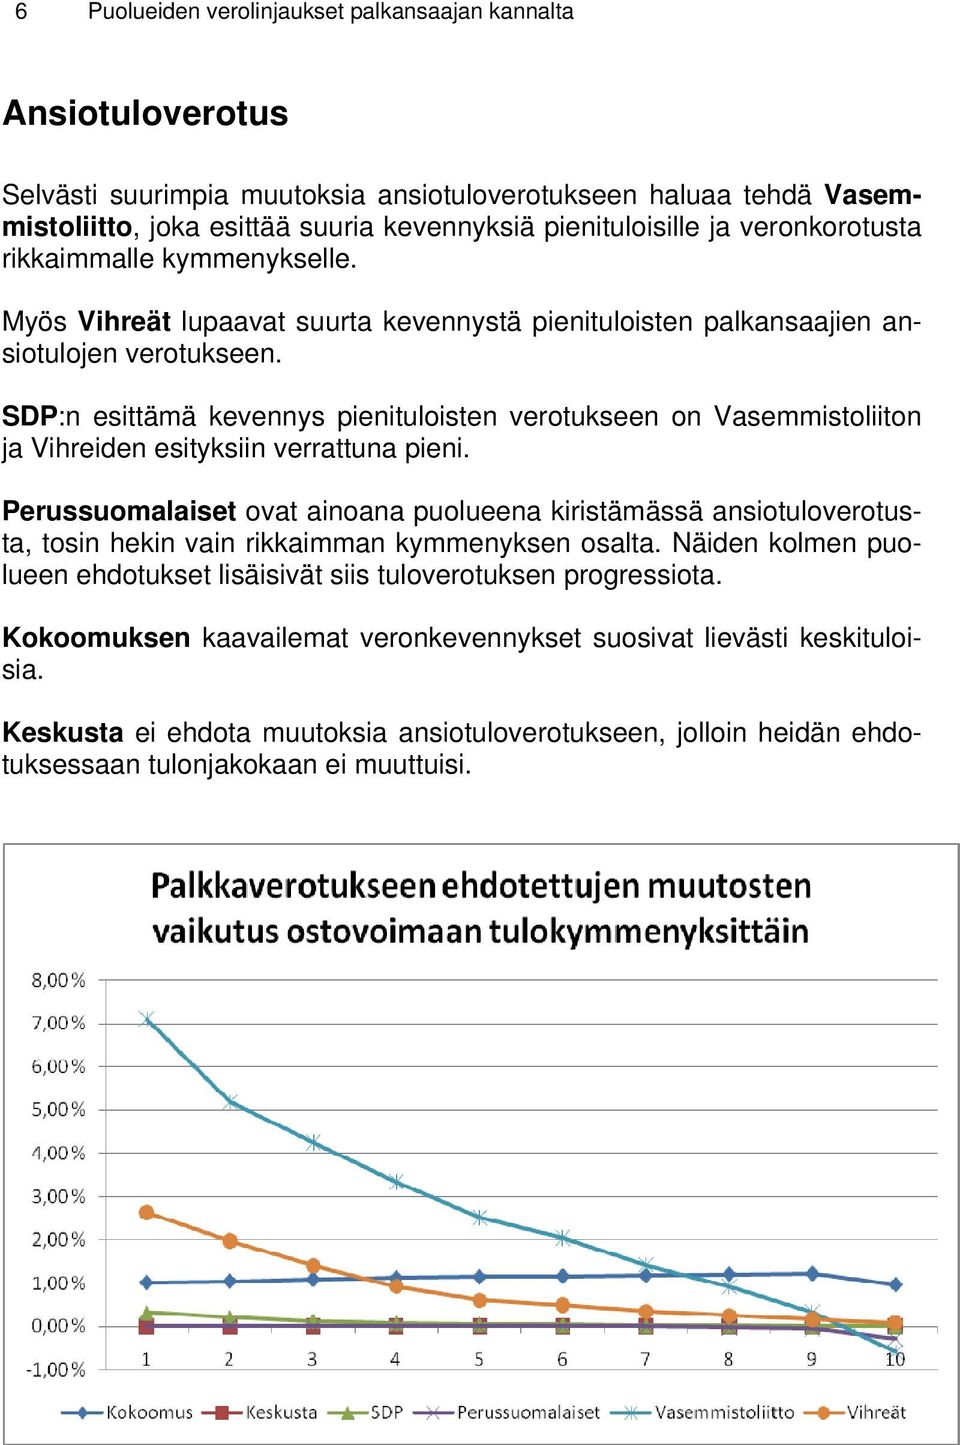 SDP:n esittämä kevennys pienituloisten verotukseen on Vasemmistoliiton ja Vihreiden esityksiin verrattuna pieni.